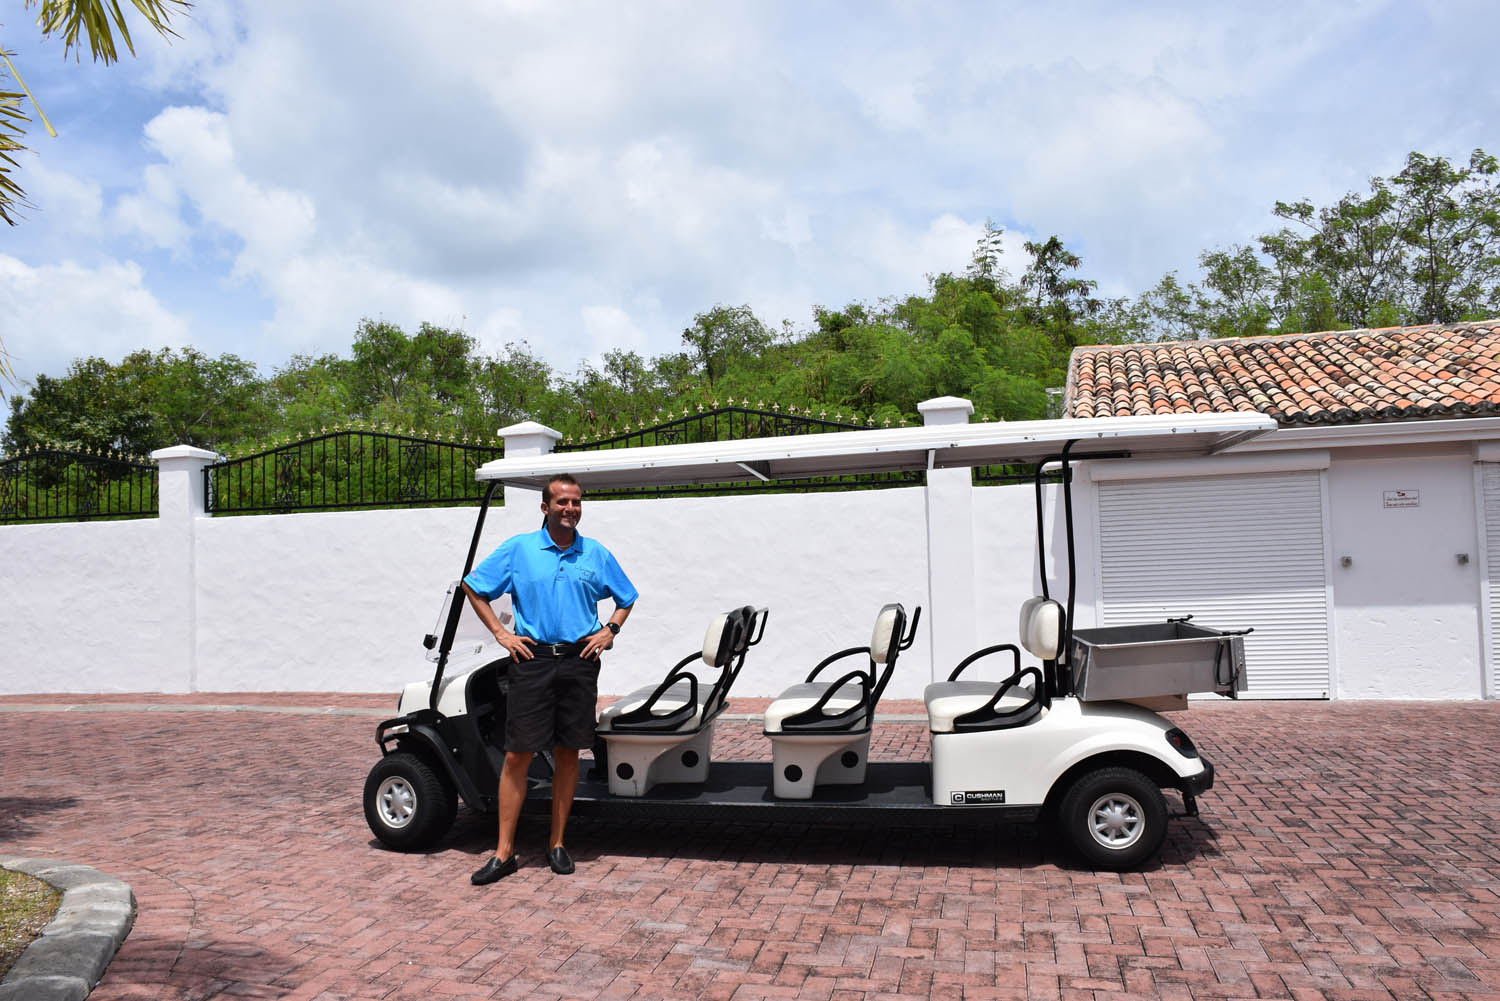 O nosso mordomo com seu carrinho de golf, para transportar hóspedes dentro do hotel